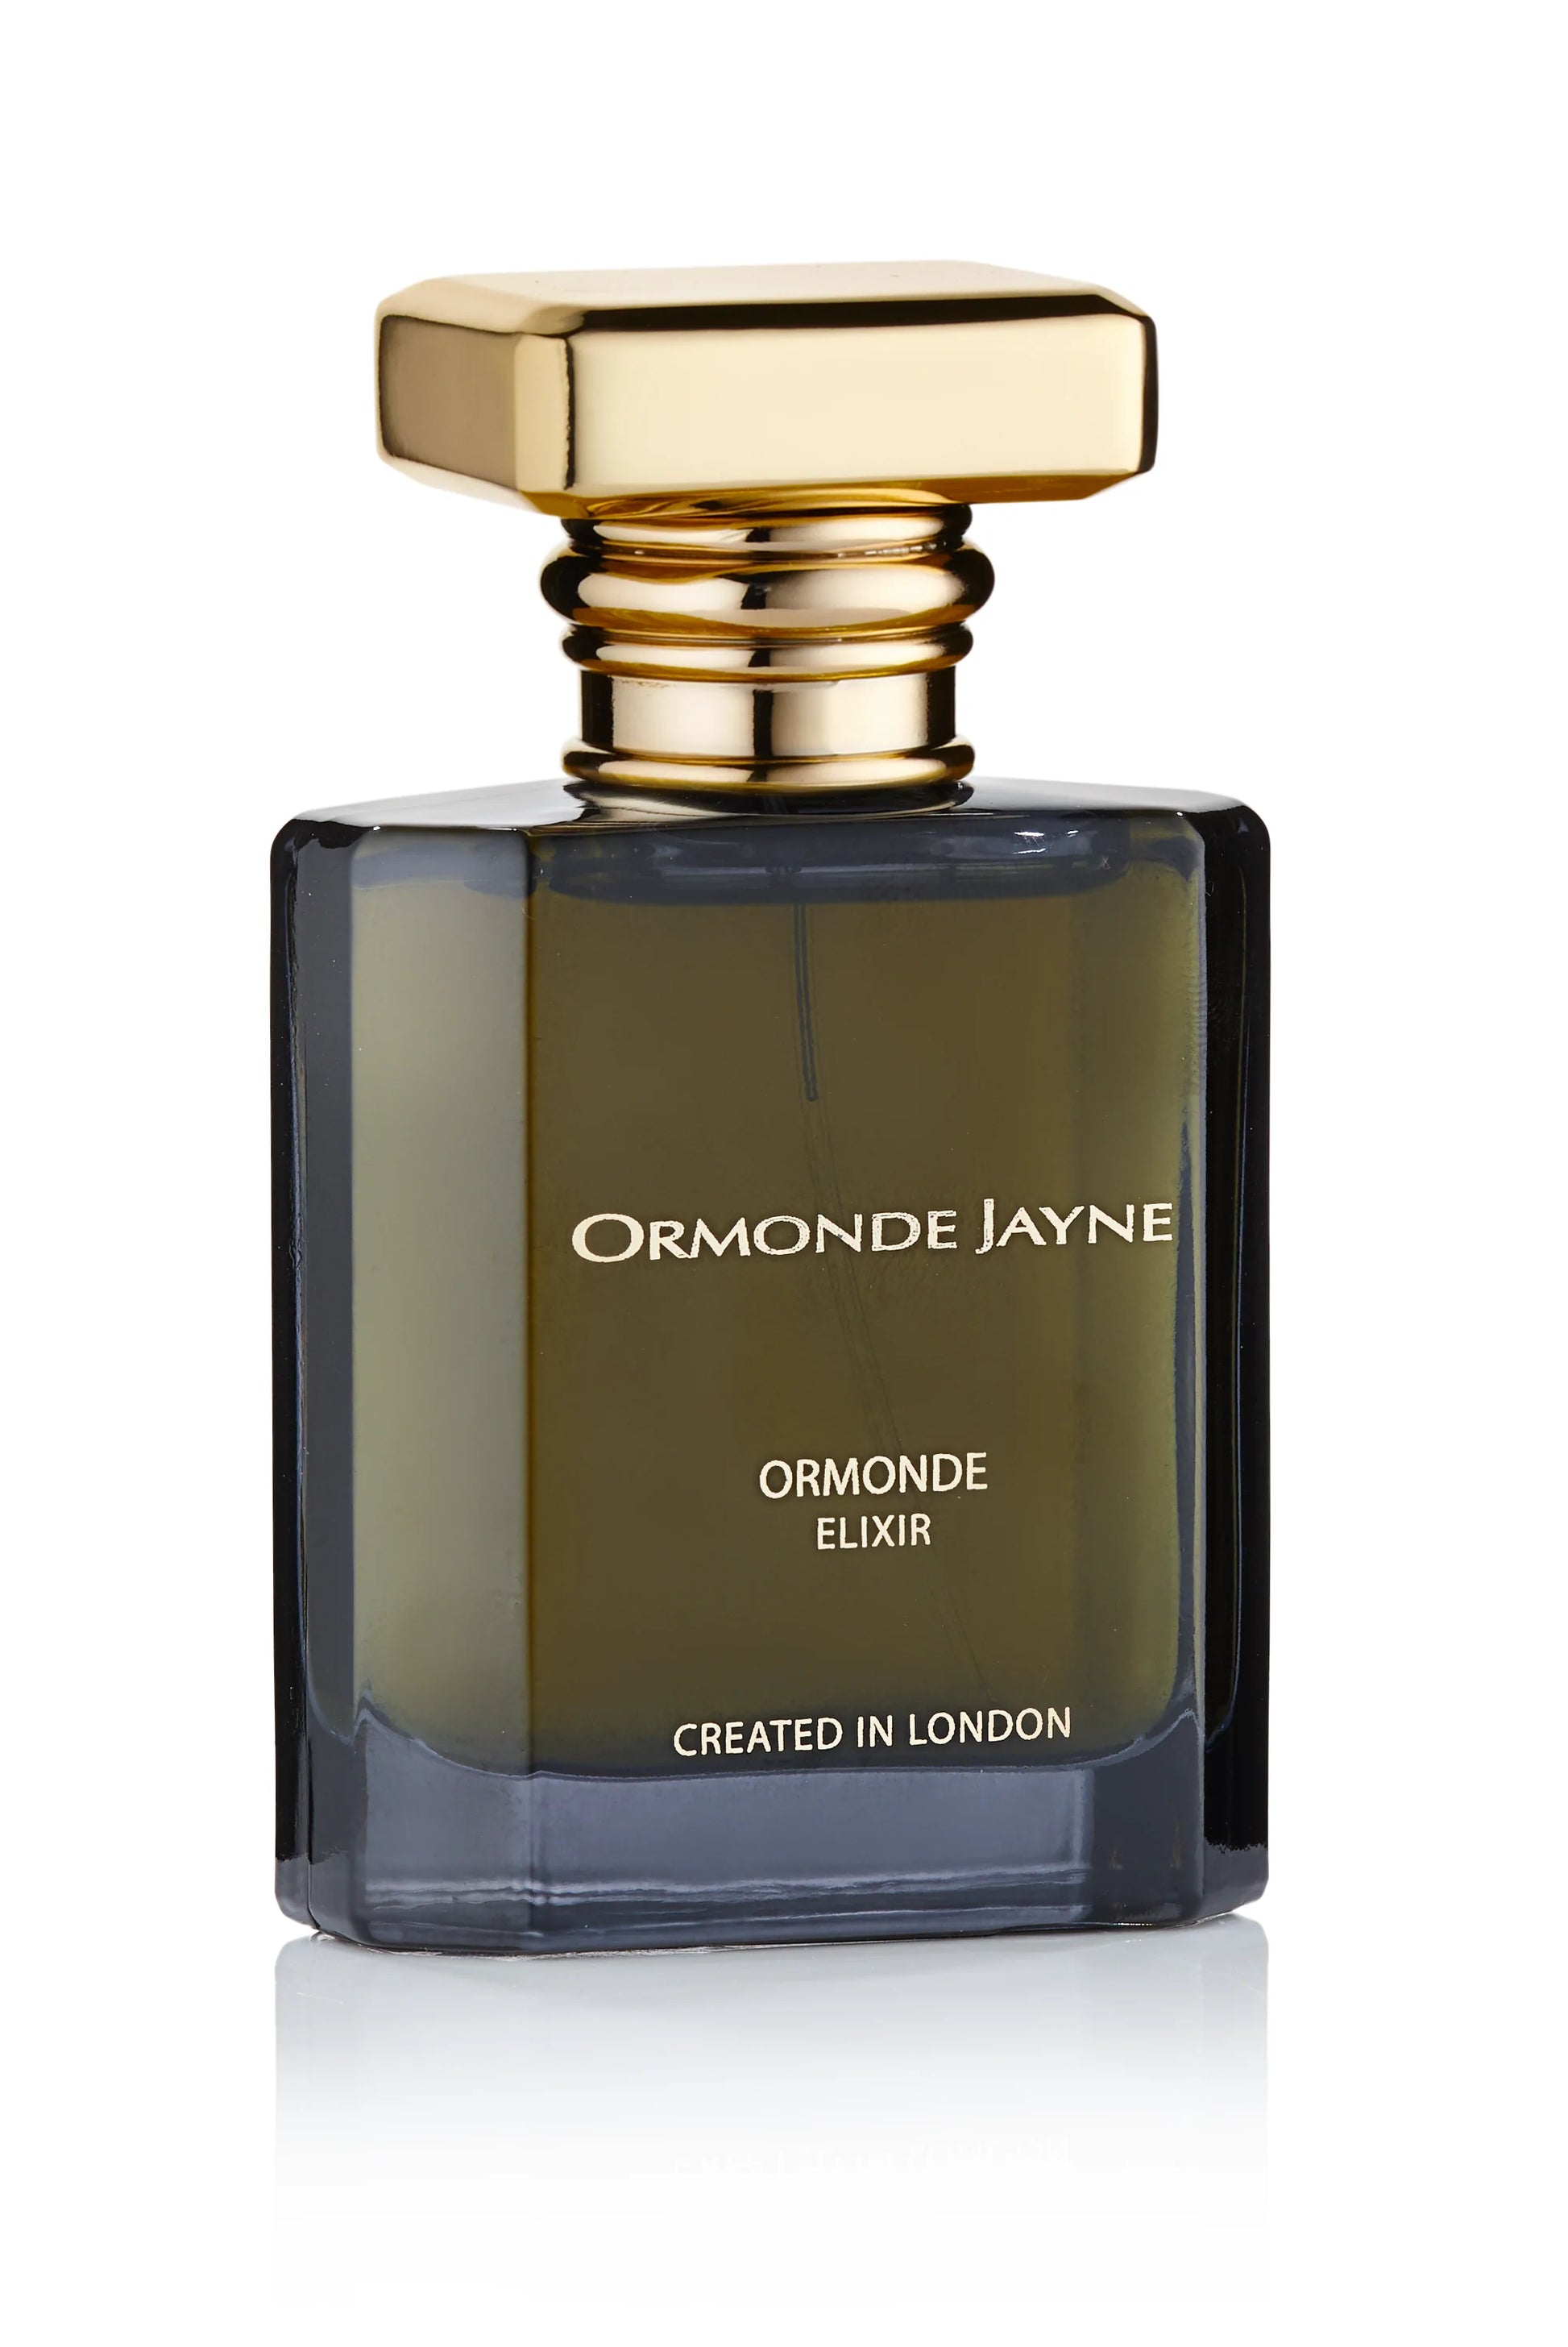 Ormonde Jayne Ormonde Elixir 2ml 0.06 فلوريدا. عينة الرائحة الرسمية لـ oz